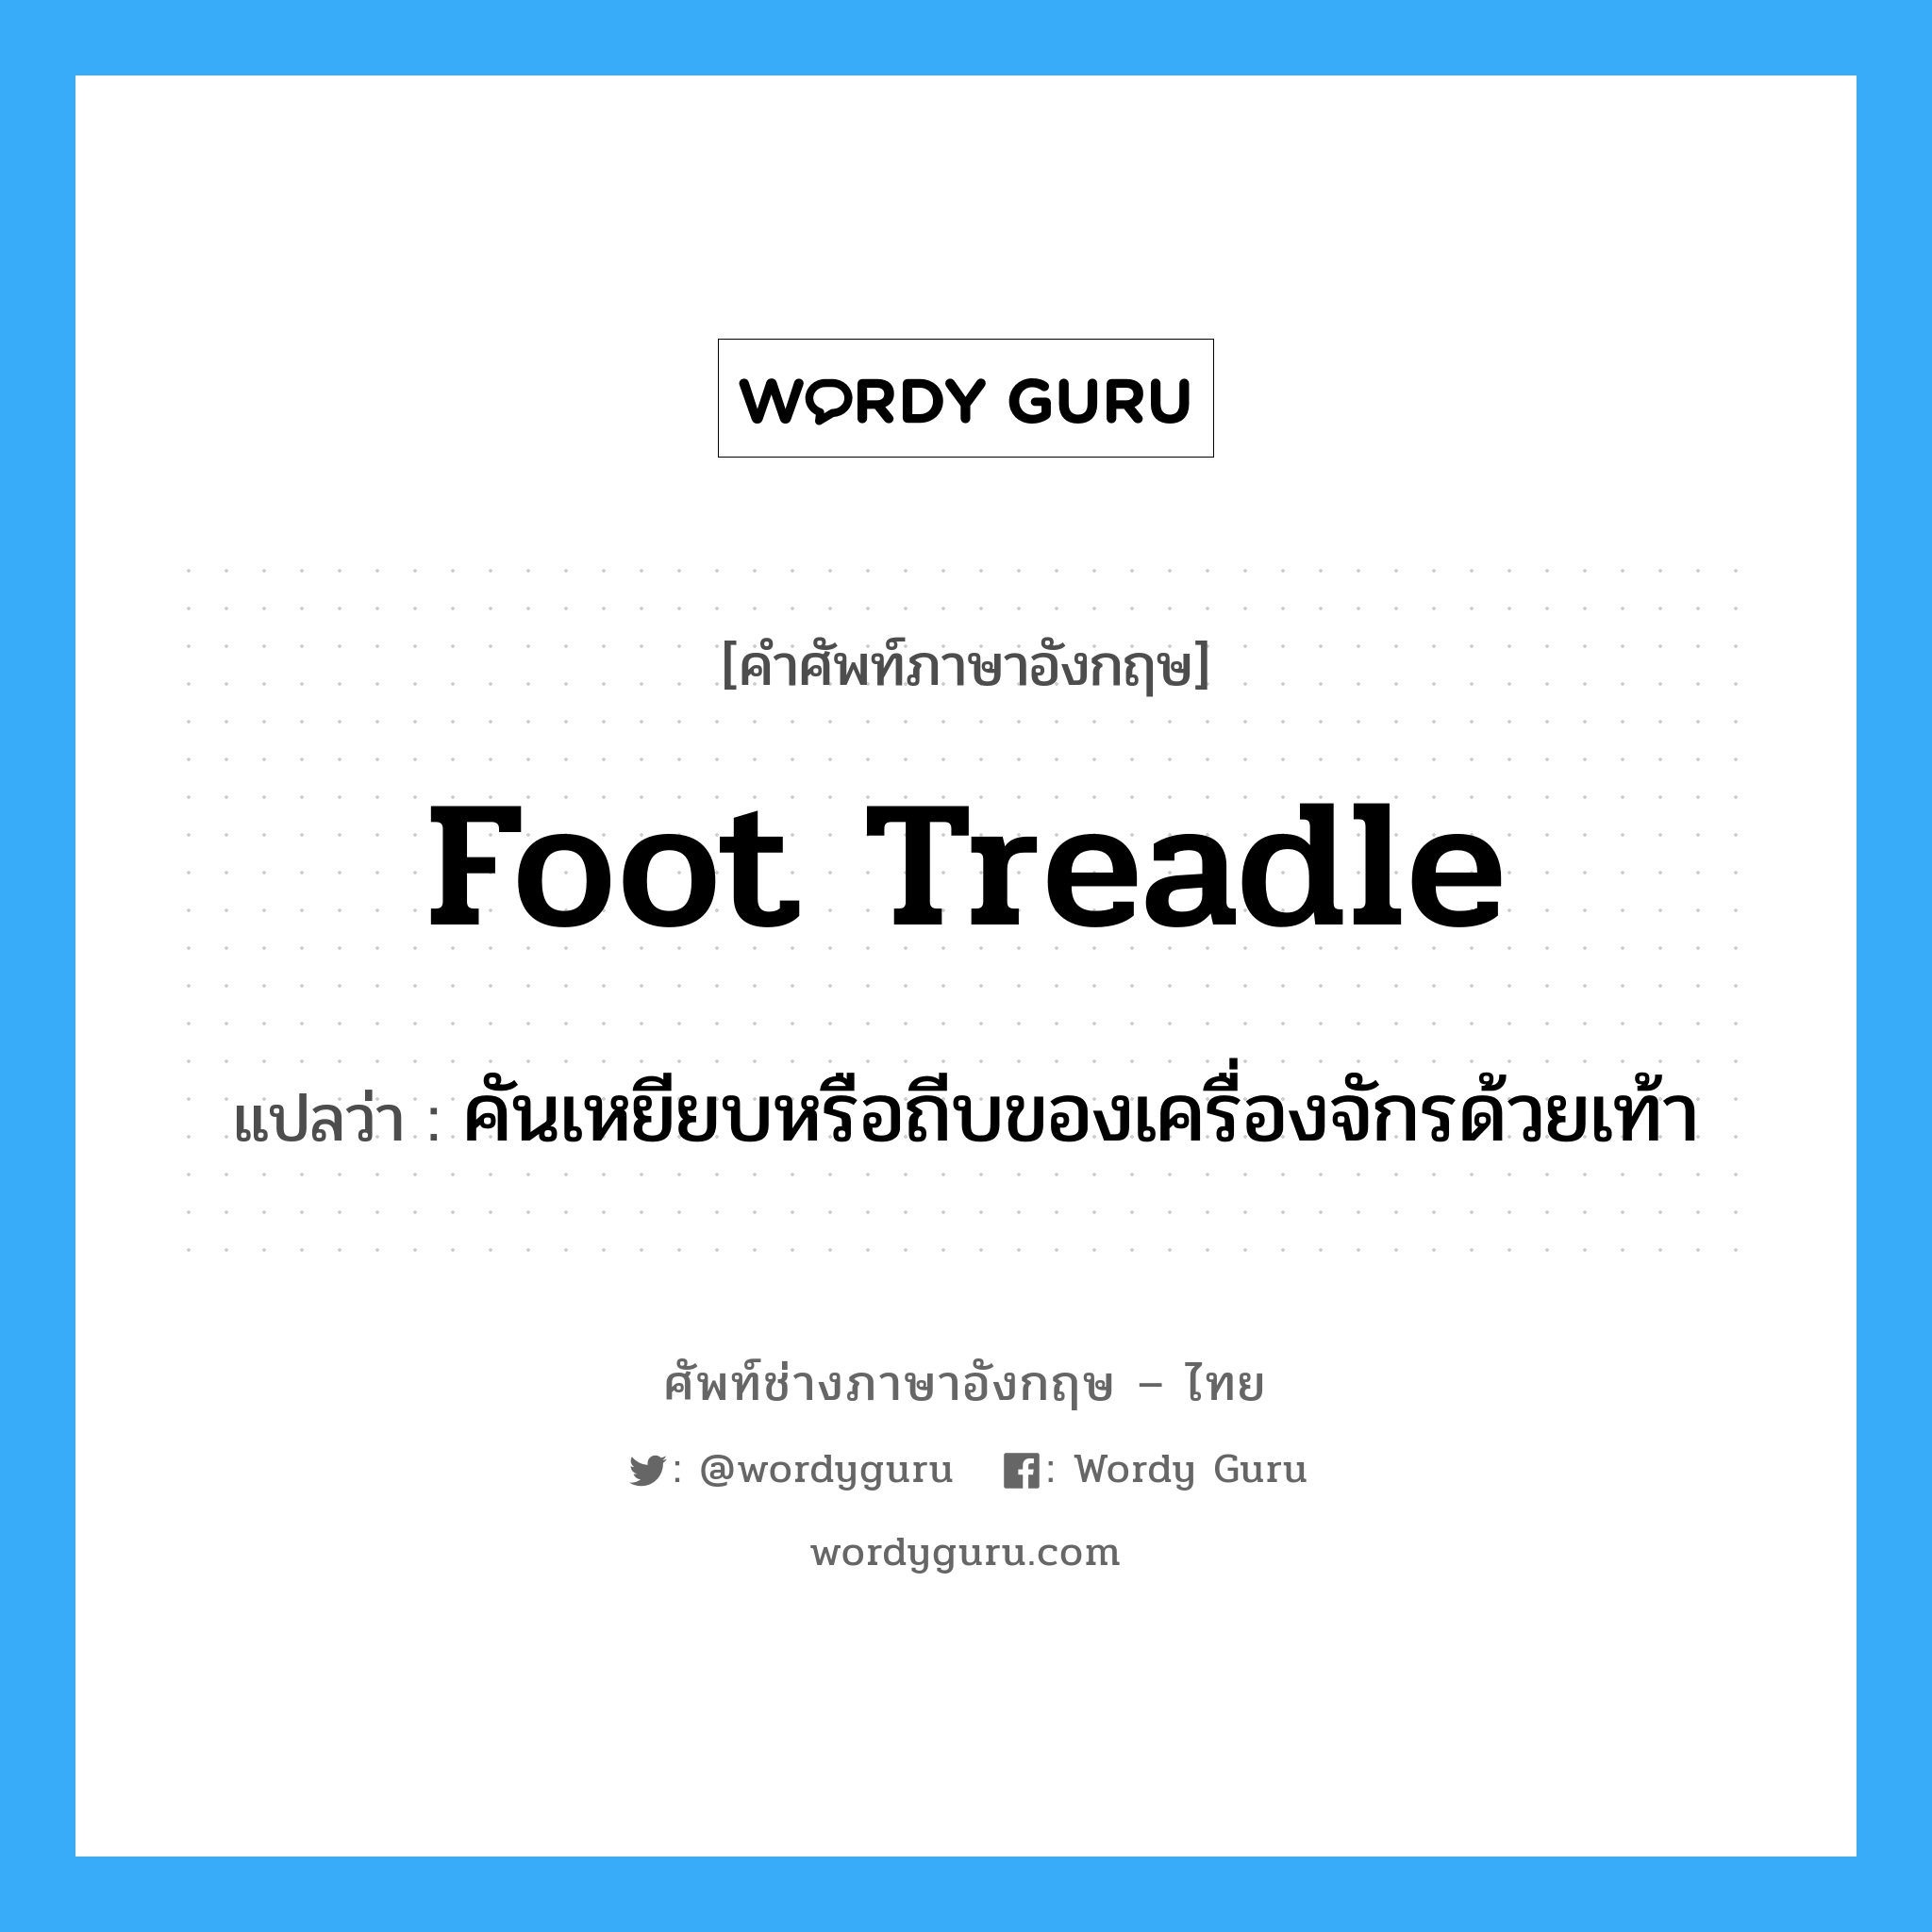 foot treadle แปลว่า?, คำศัพท์ช่างภาษาอังกฤษ - ไทย foot treadle คำศัพท์ภาษาอังกฤษ foot treadle แปลว่า คันเหยียบหรือถีบของเครื่องจักรด้วยเท้า